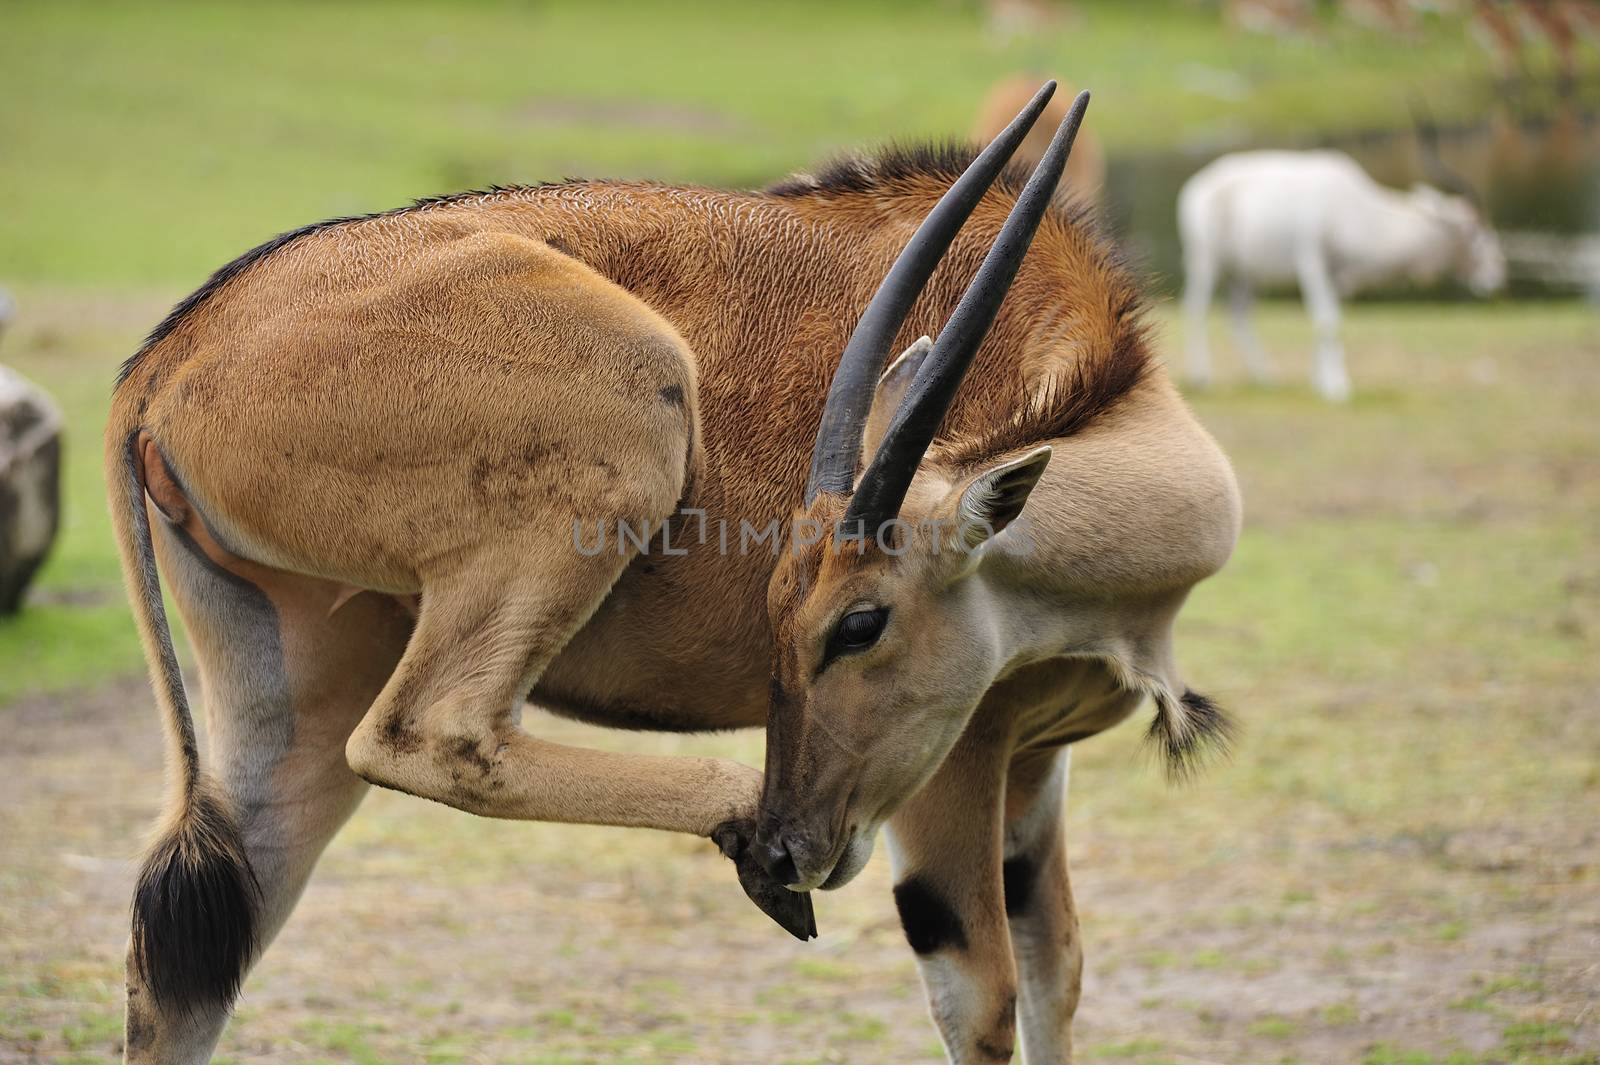 Closeup of a Taurotragus oryx